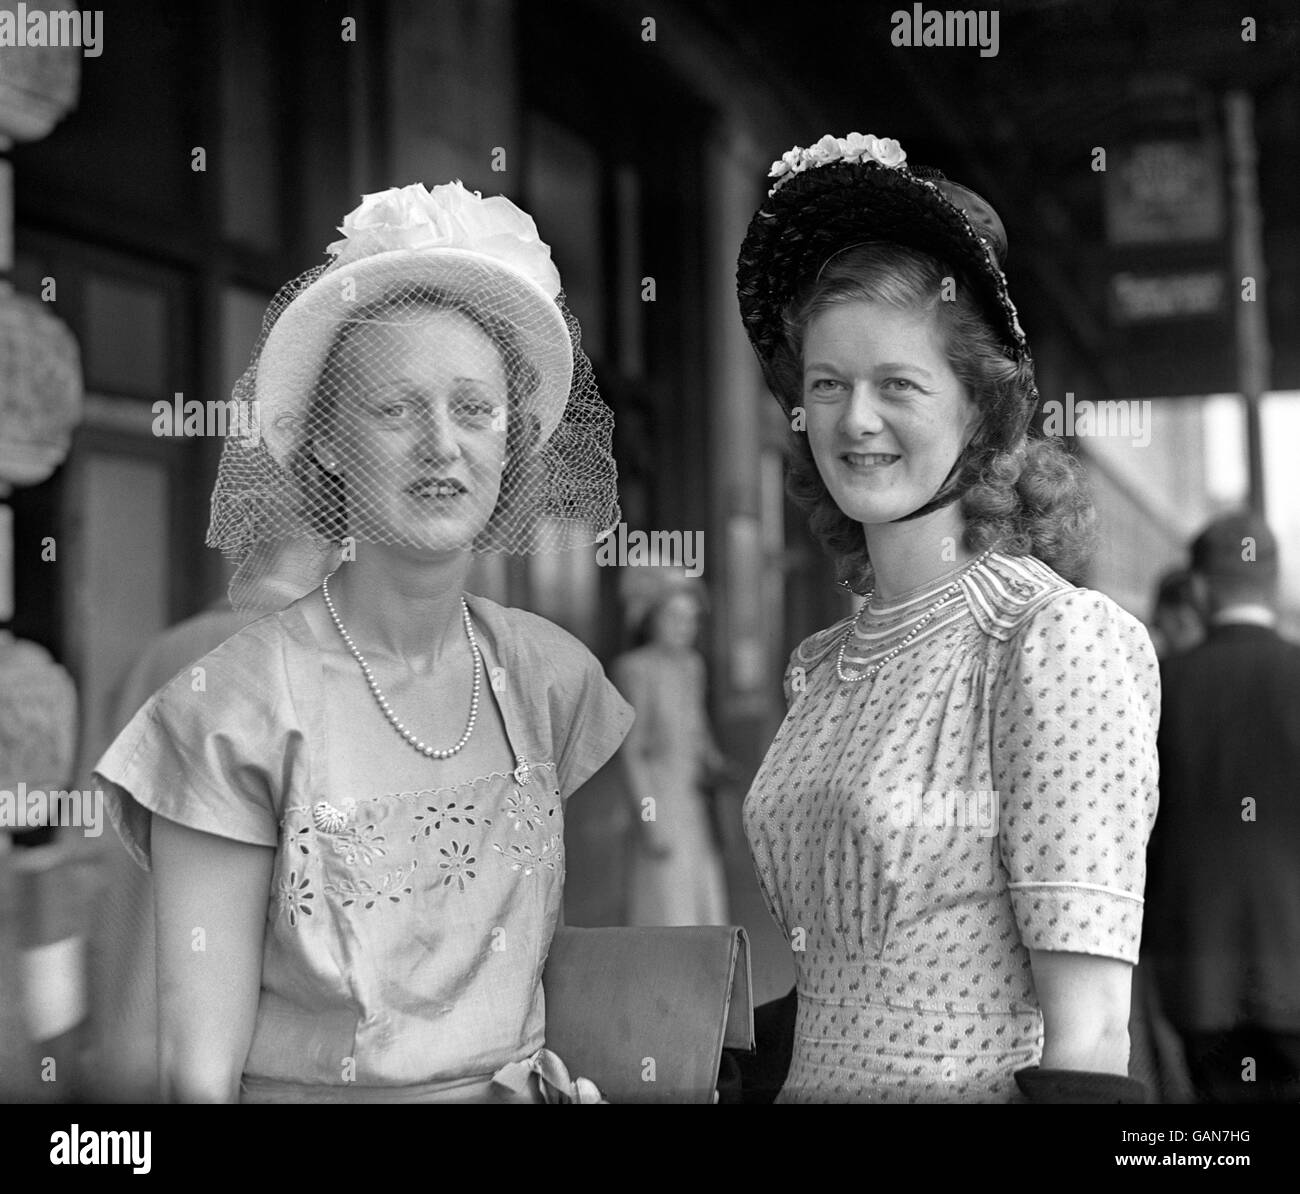 La sig.ra i Coppock, a sinistra, indossa un cappello velato e la sig.ra S McCash indossa un cofano al Royal Ascot. Foto Stock